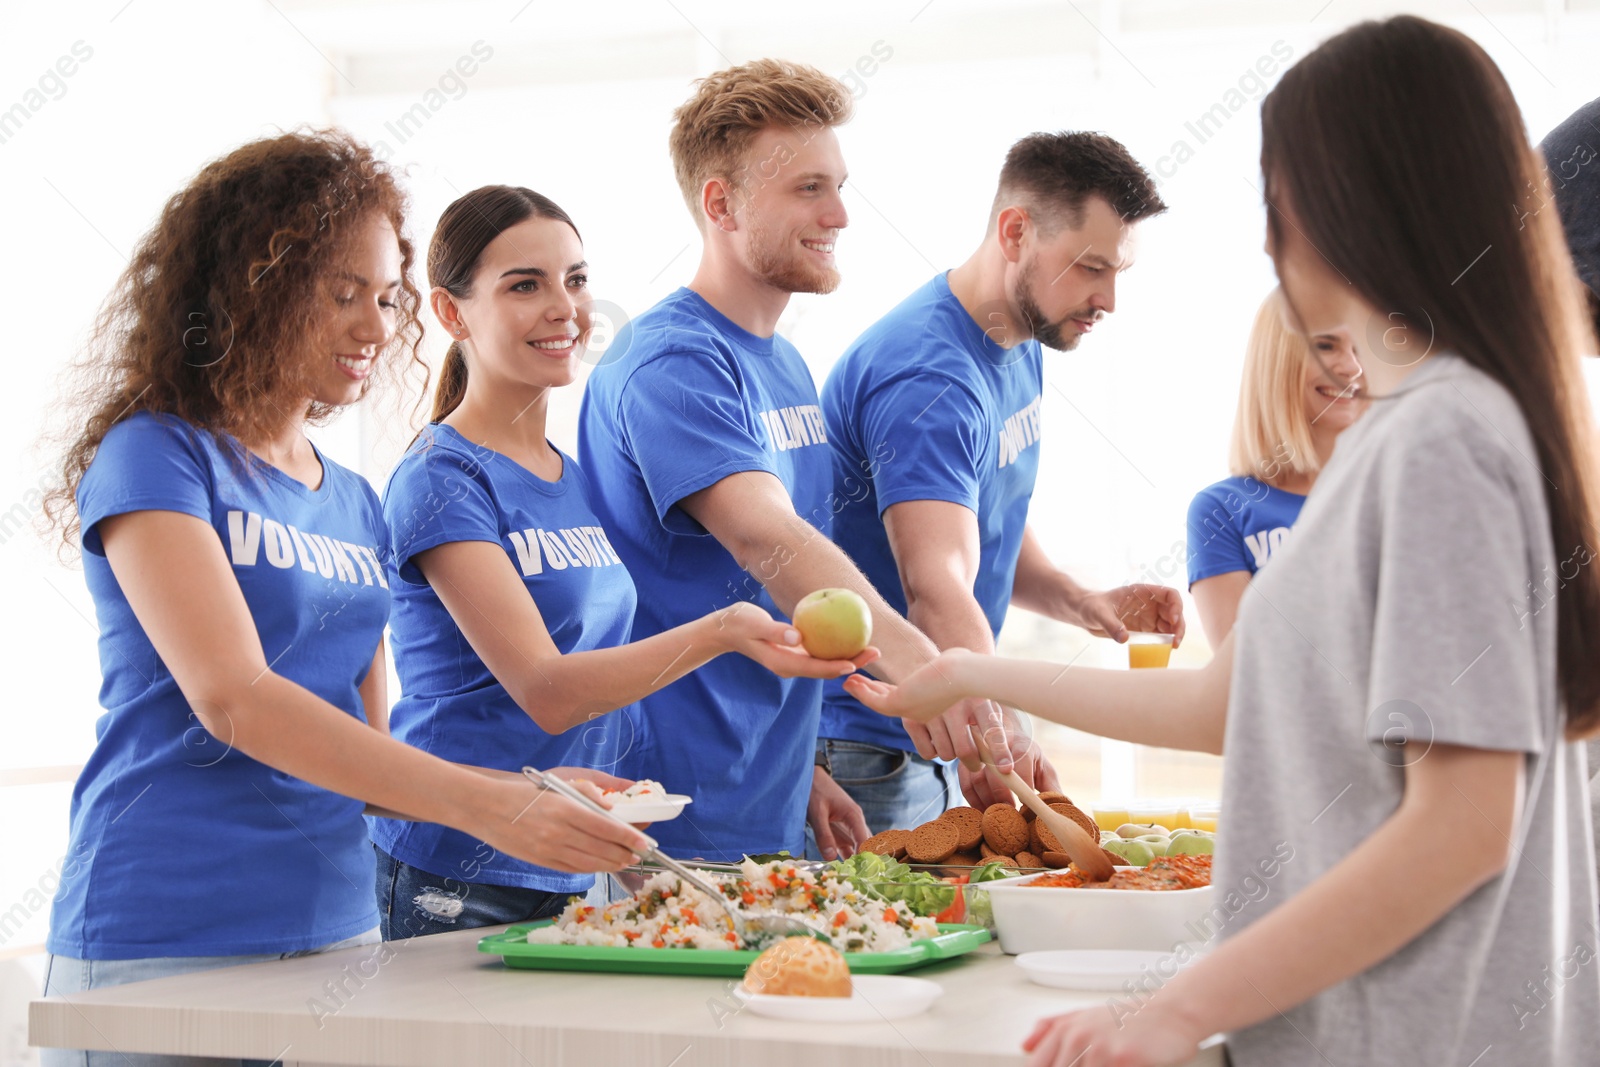 Photo of Volunteers serving food to poor people indoors